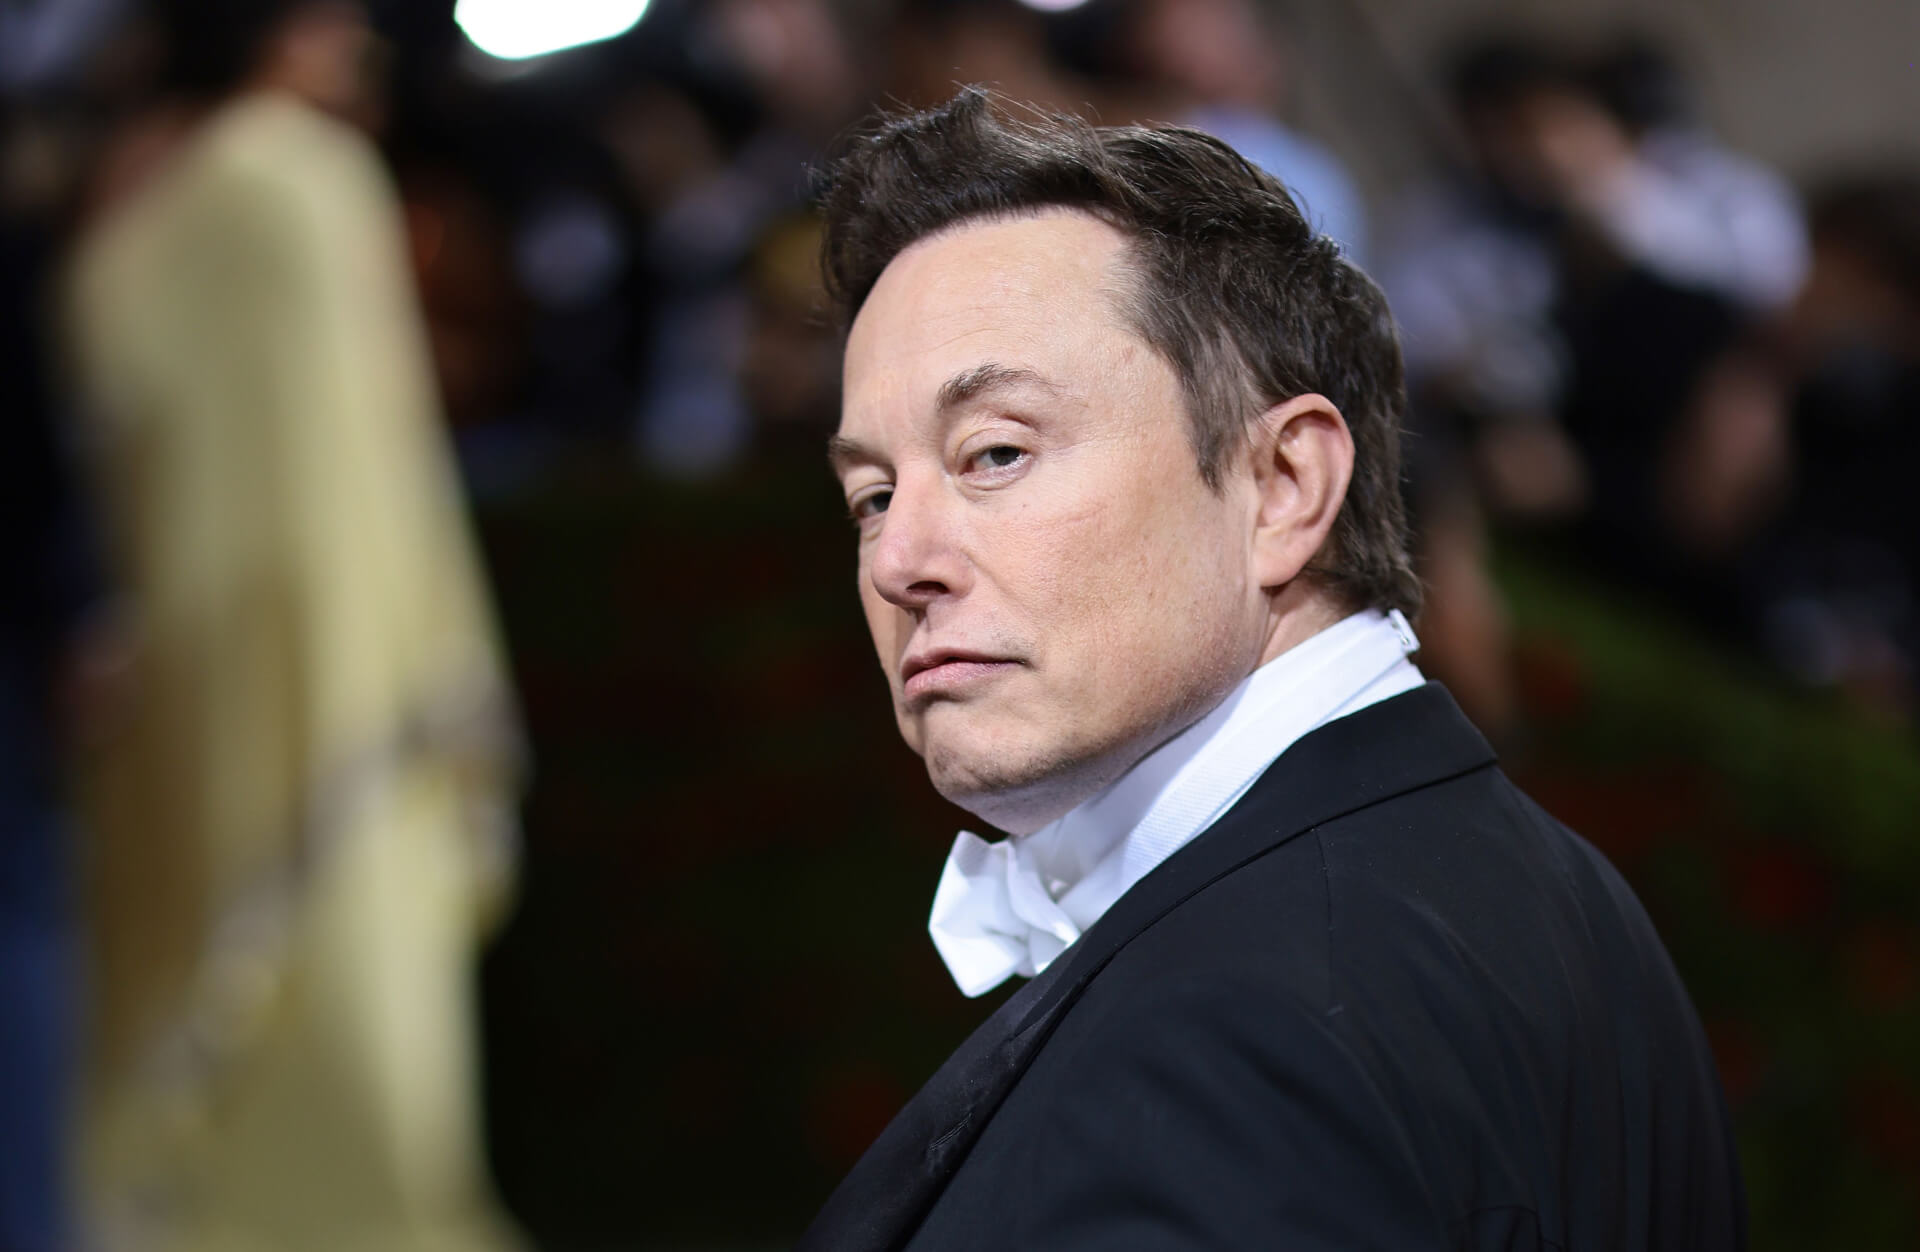 Huge Spike in Hate Speech Following Elon Musk’s Twitter Takeover